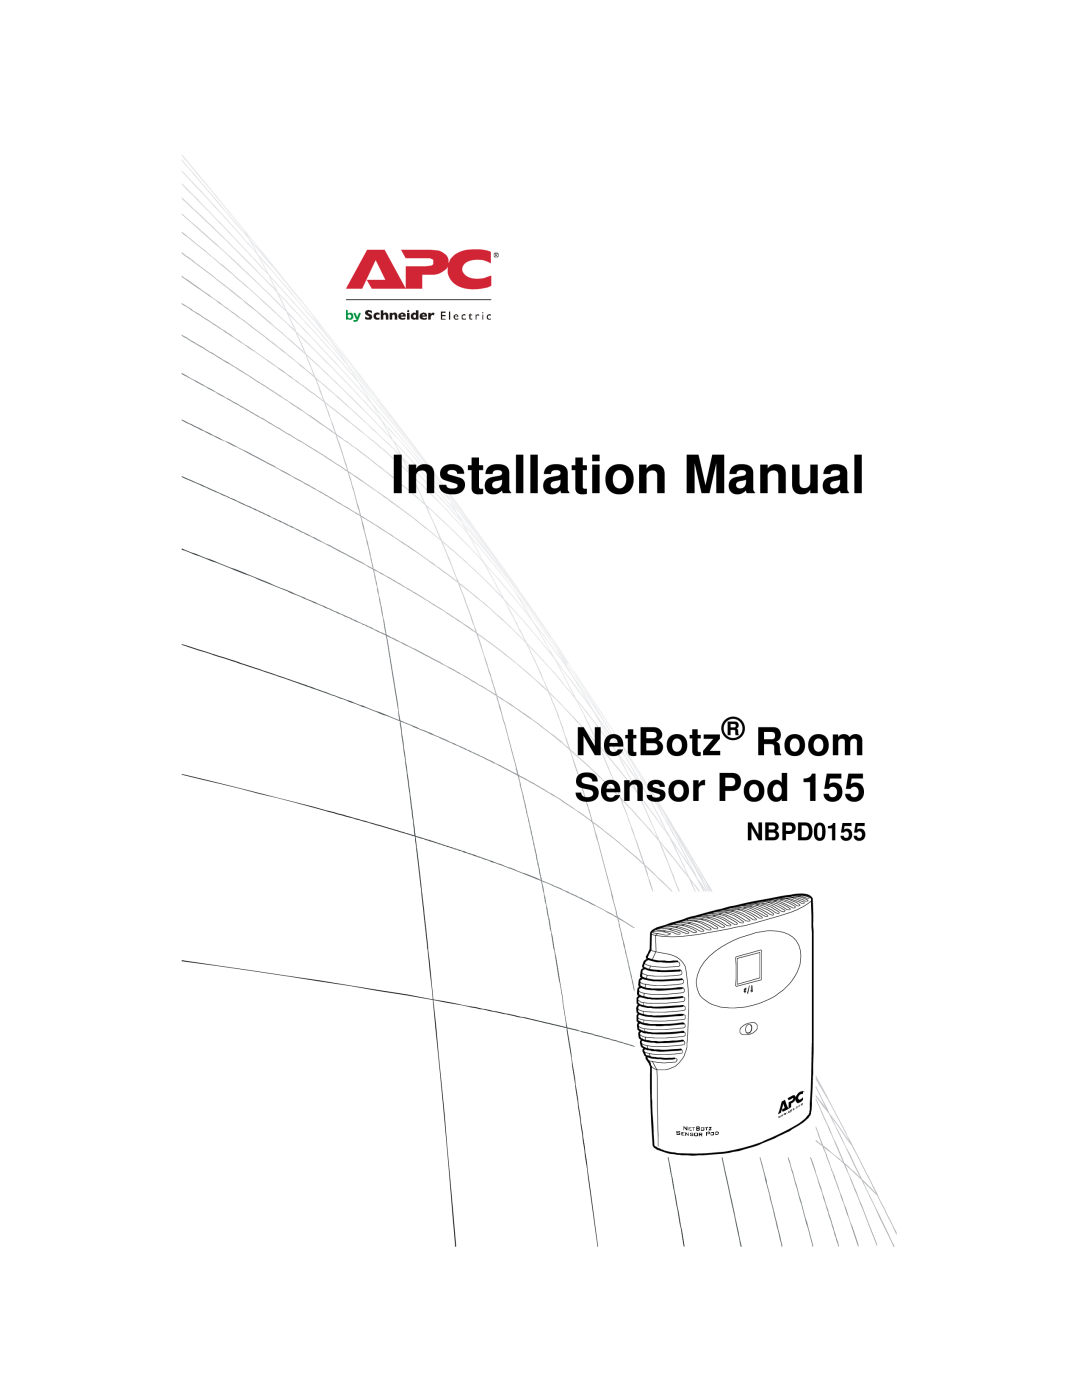 APC NBPD0155 installation manual Installation Manual, NetBotz Room Sensor Pod 